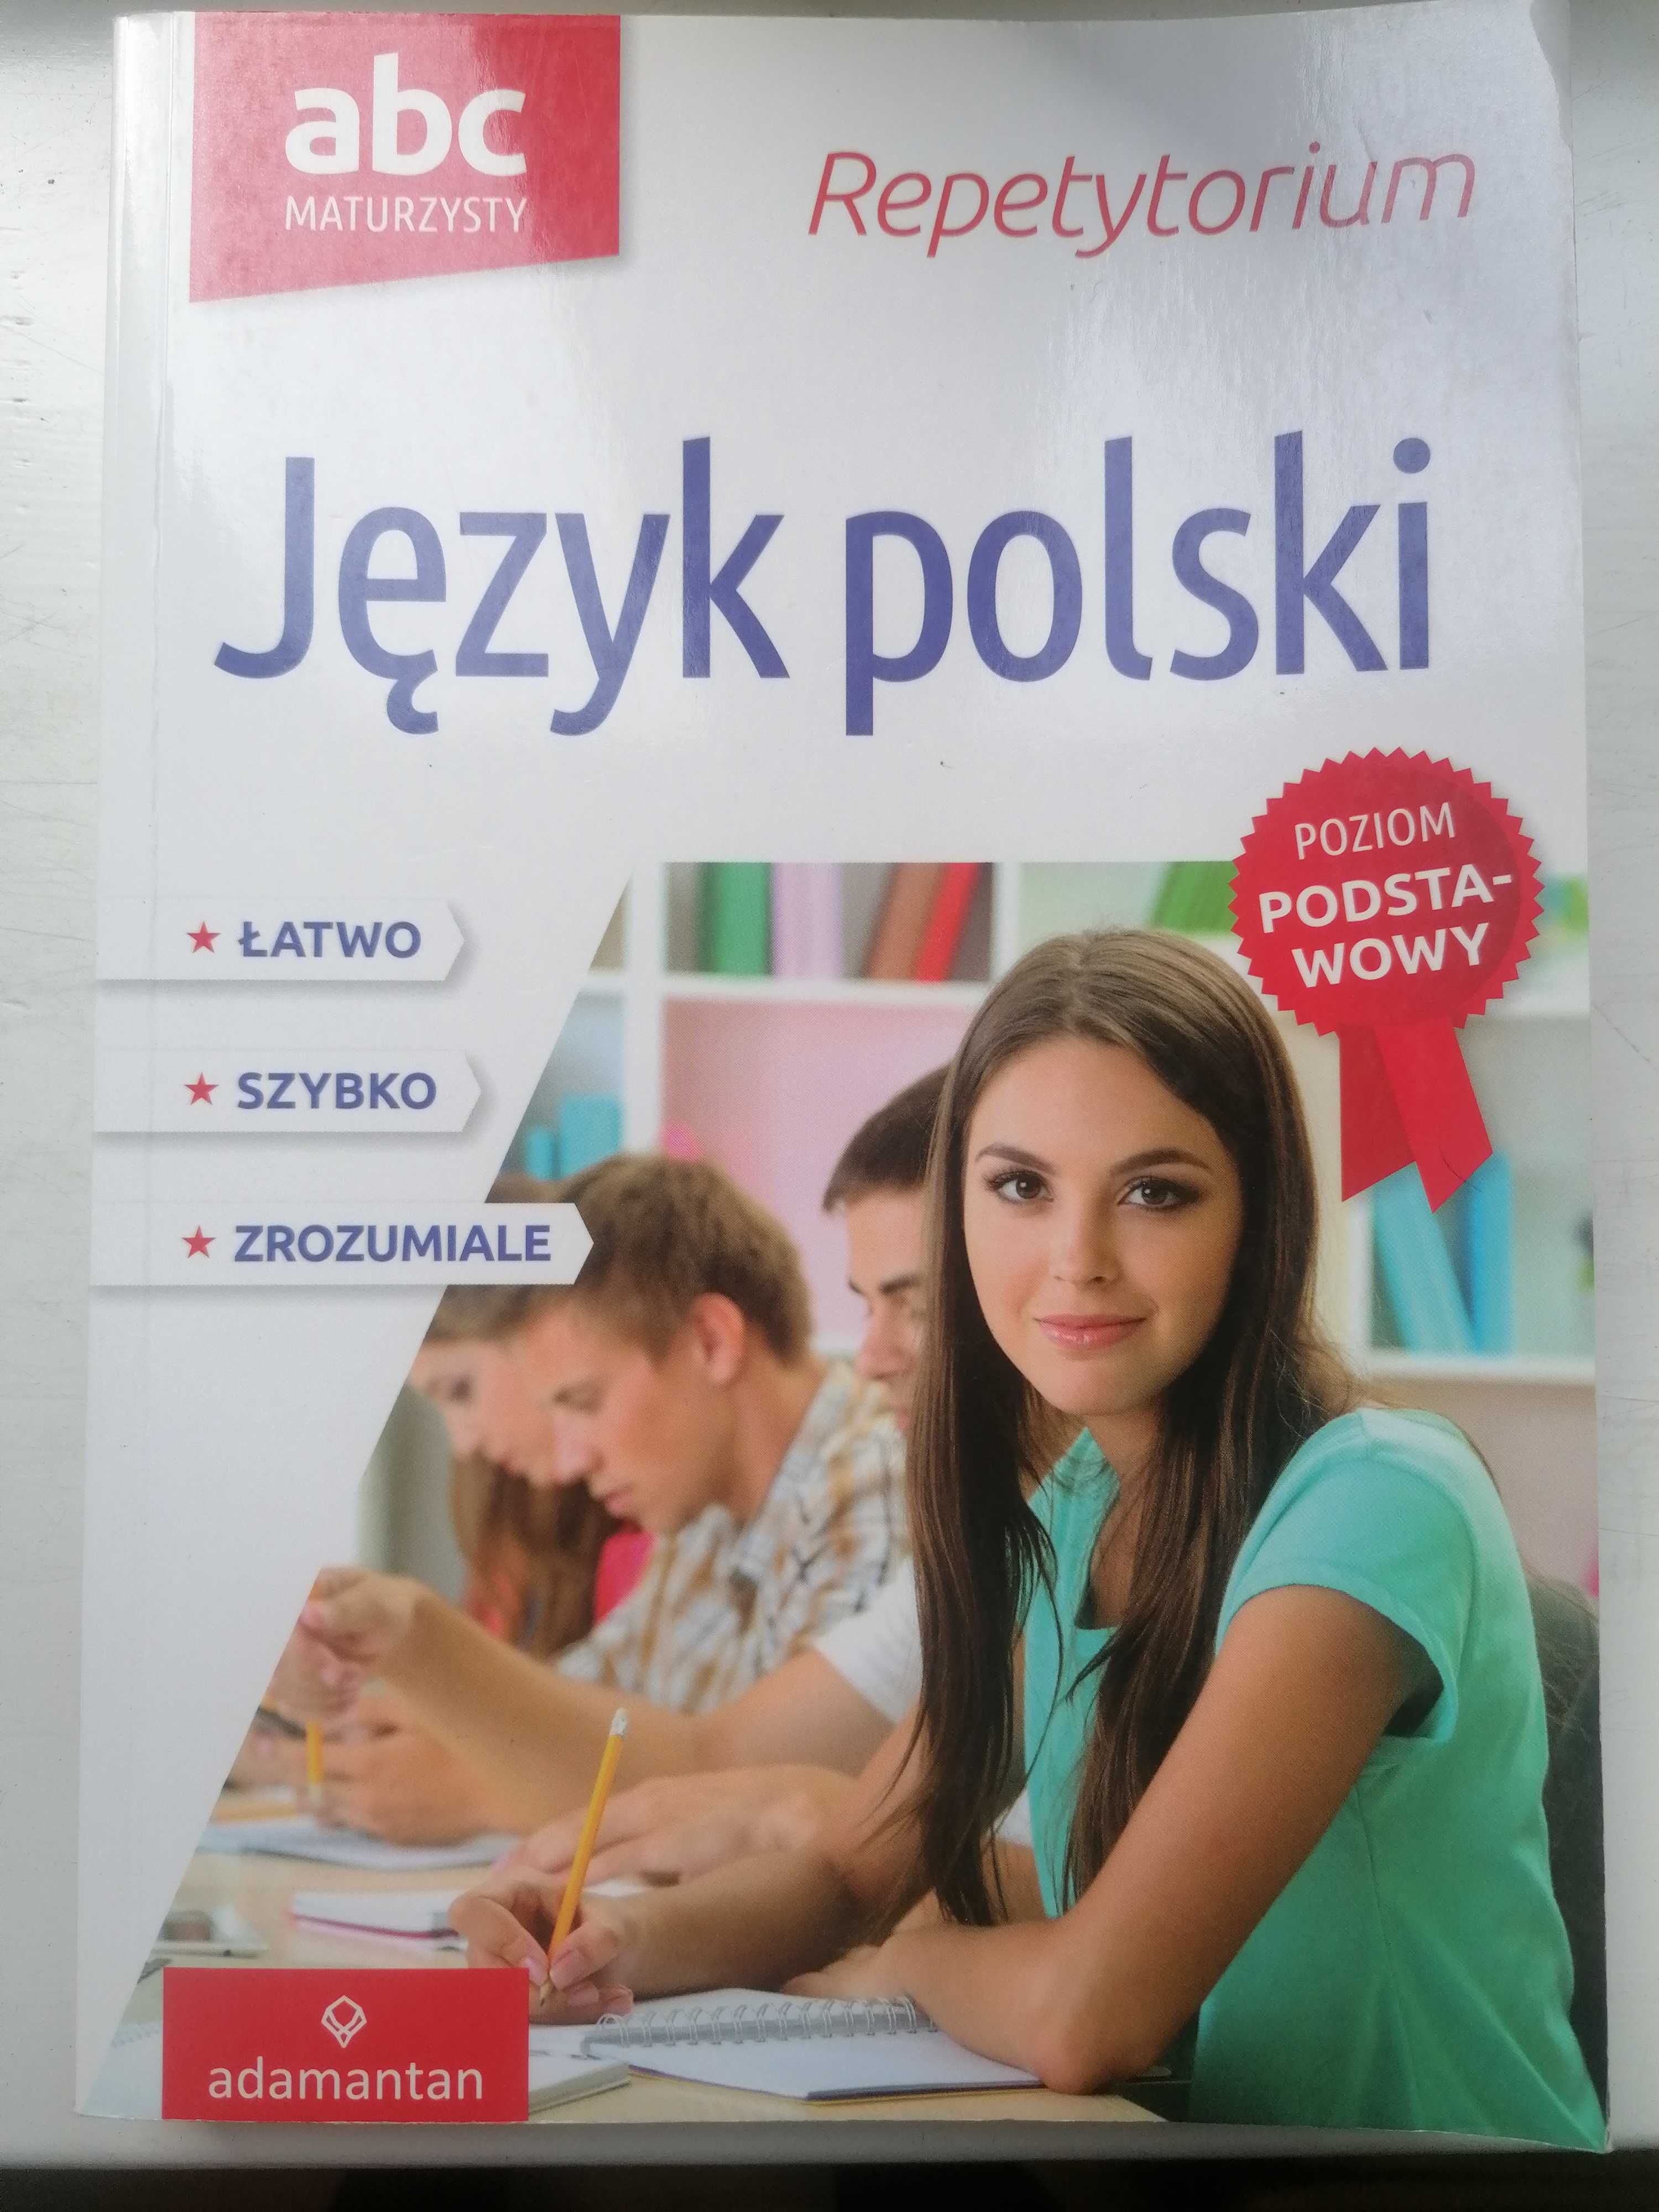 Repetytorium maturzysty język polski